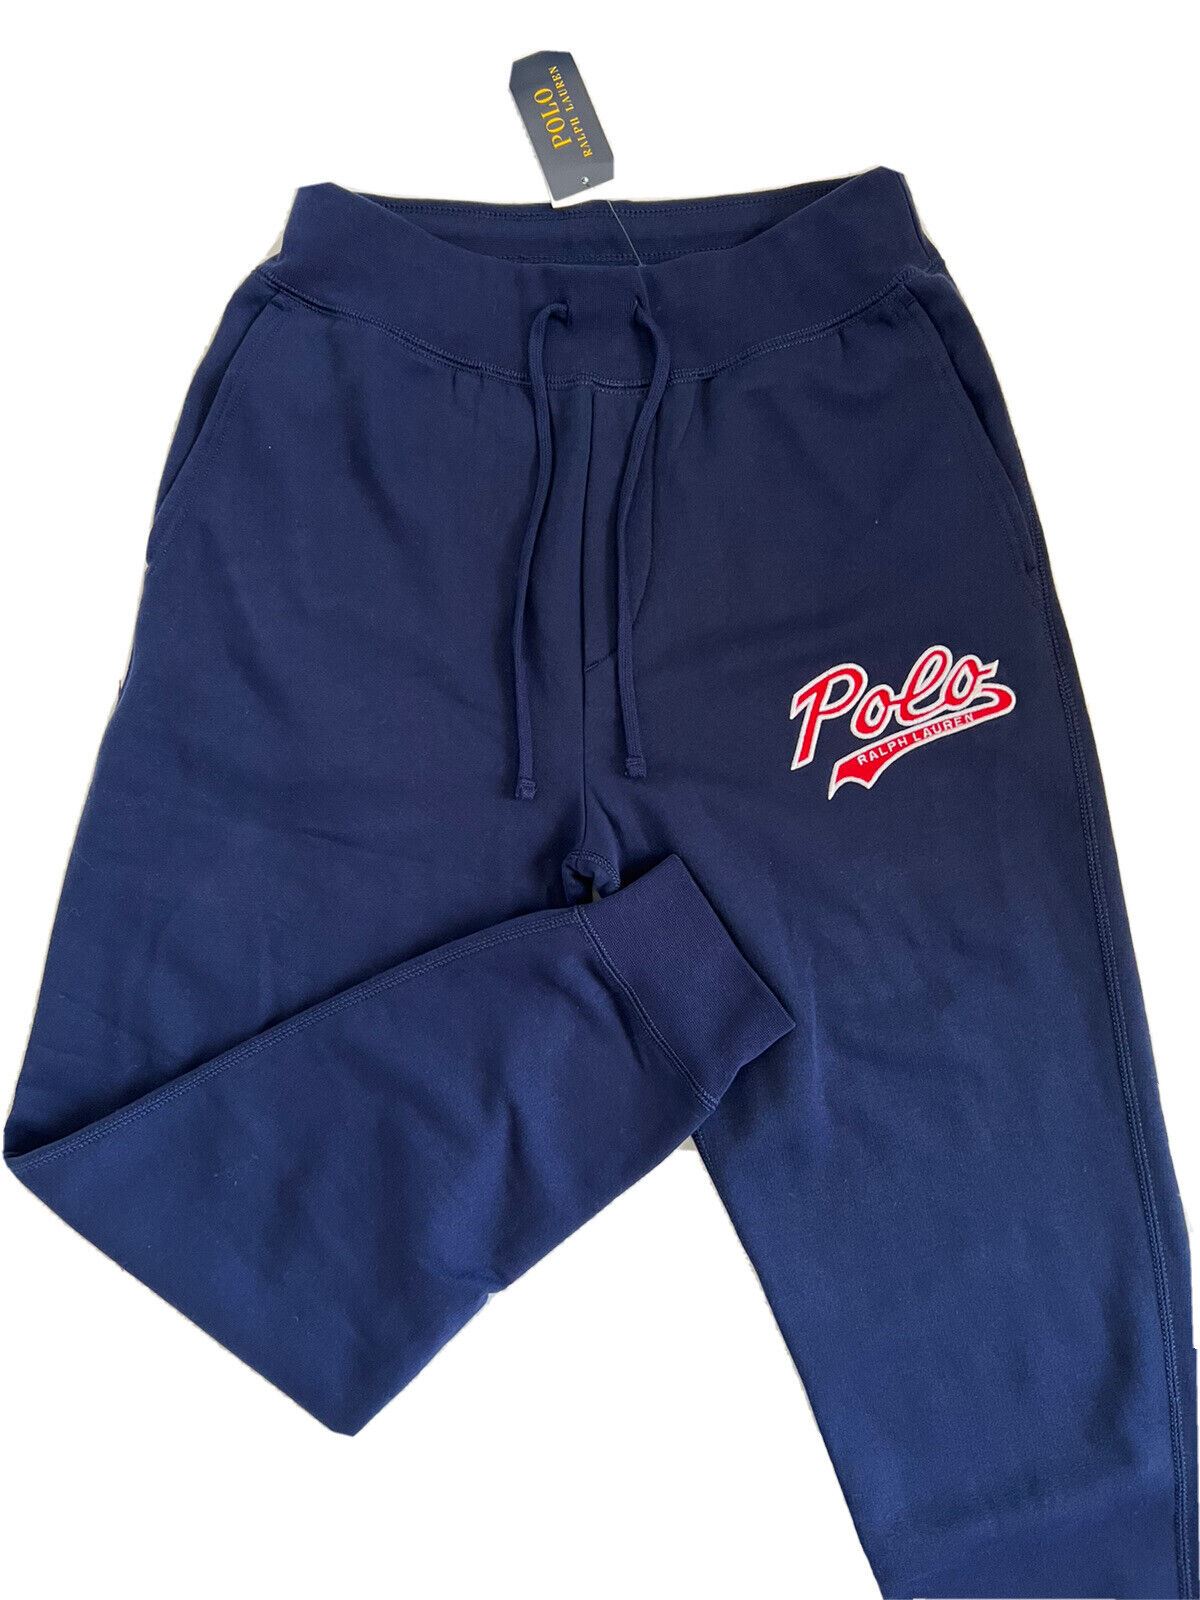 Мужские темно-синие повседневные брюки Polo Ralph Lauren с логотипом NWT, маленькие размеры, $125